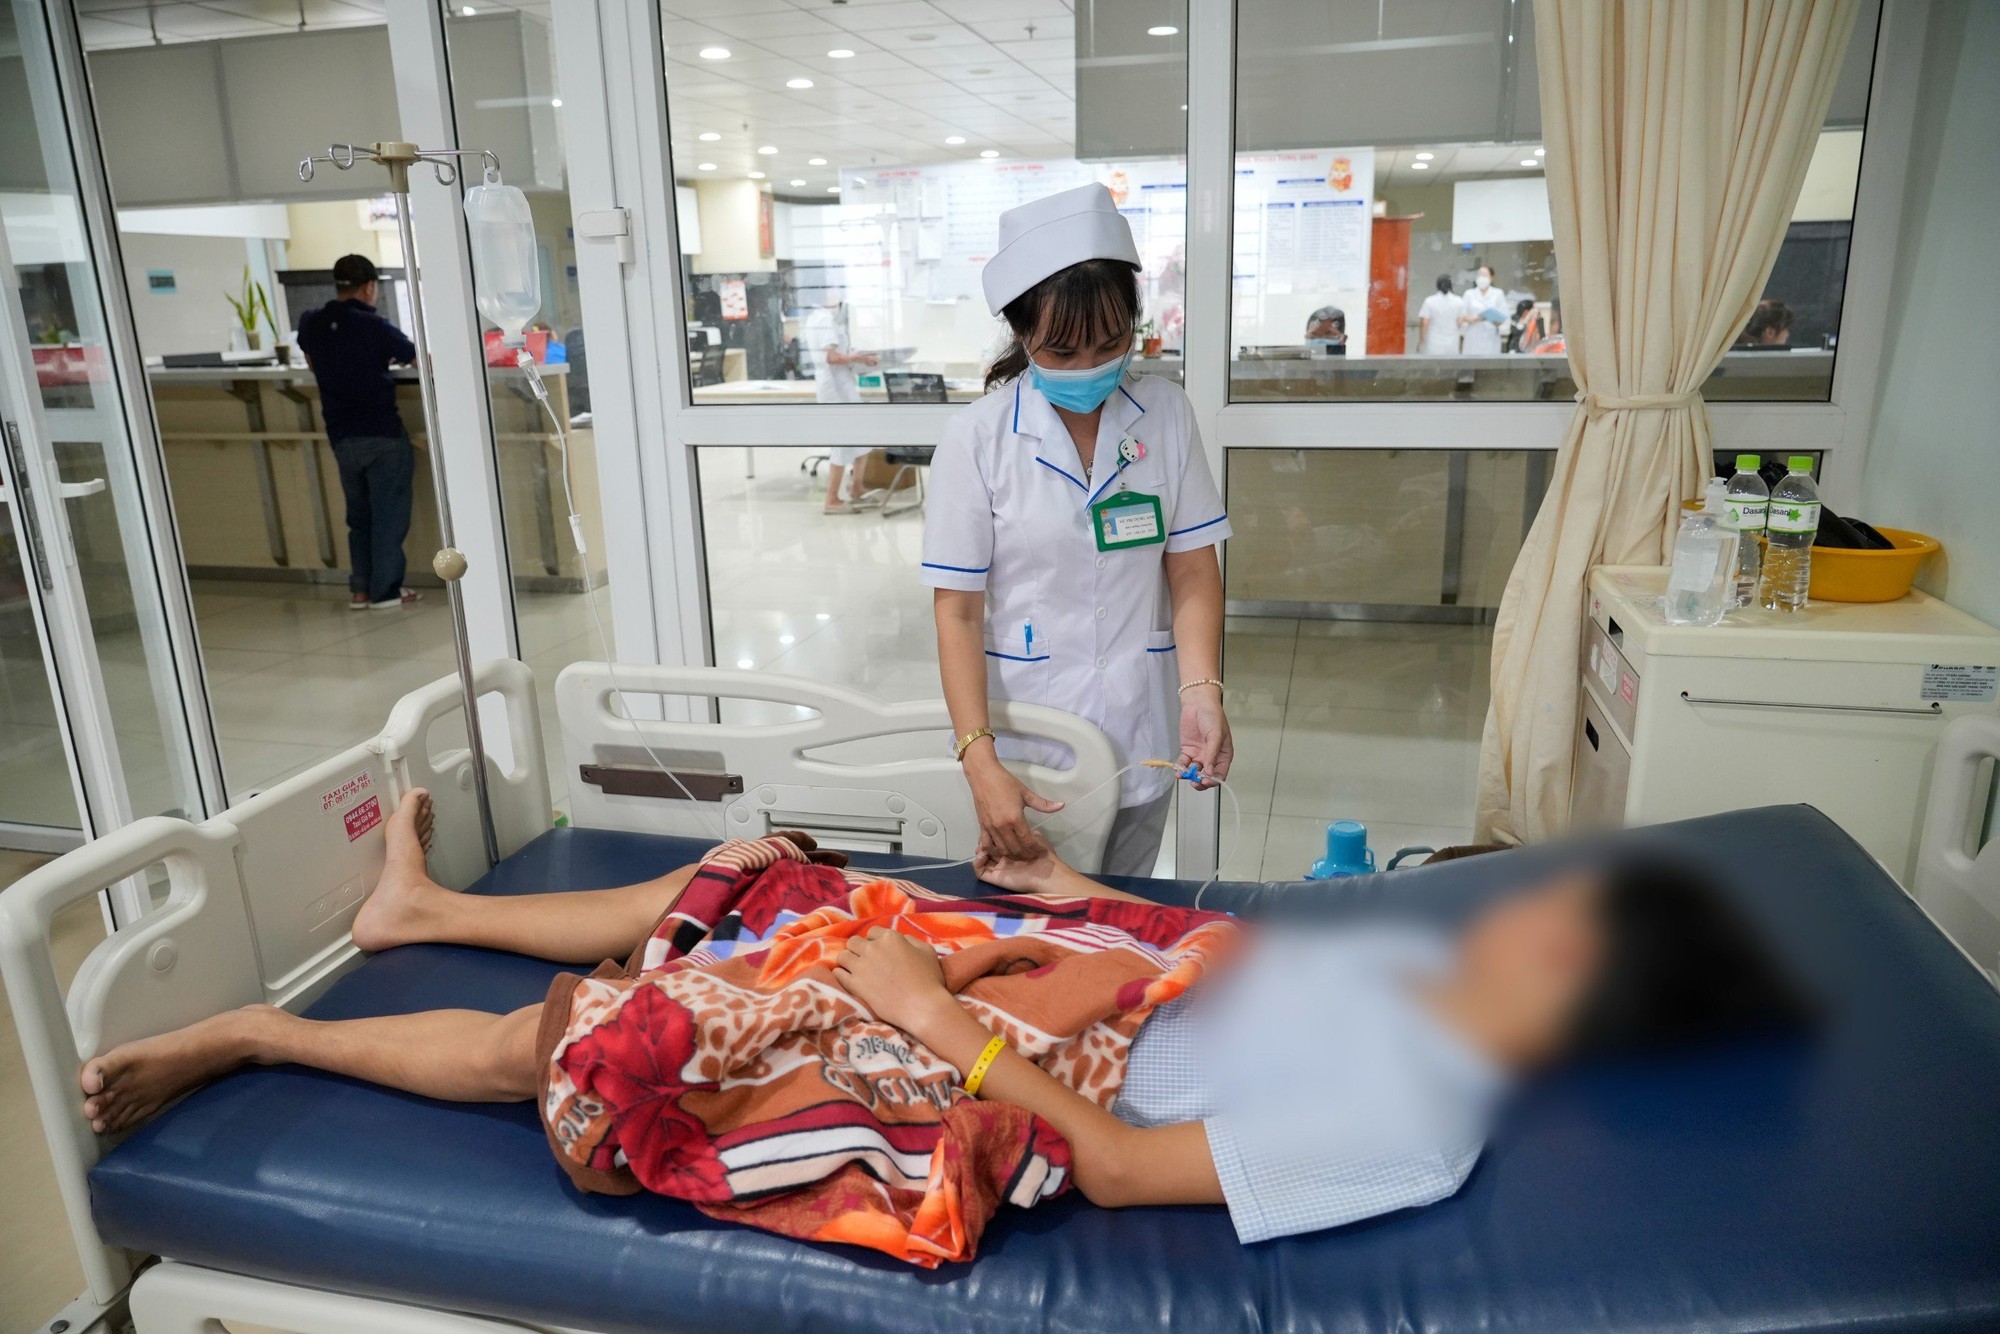 Kiên Giang: Một học sinh lớp 9 bị nhóm người đánh trọng thương, vỡ lách - Ảnh 1.